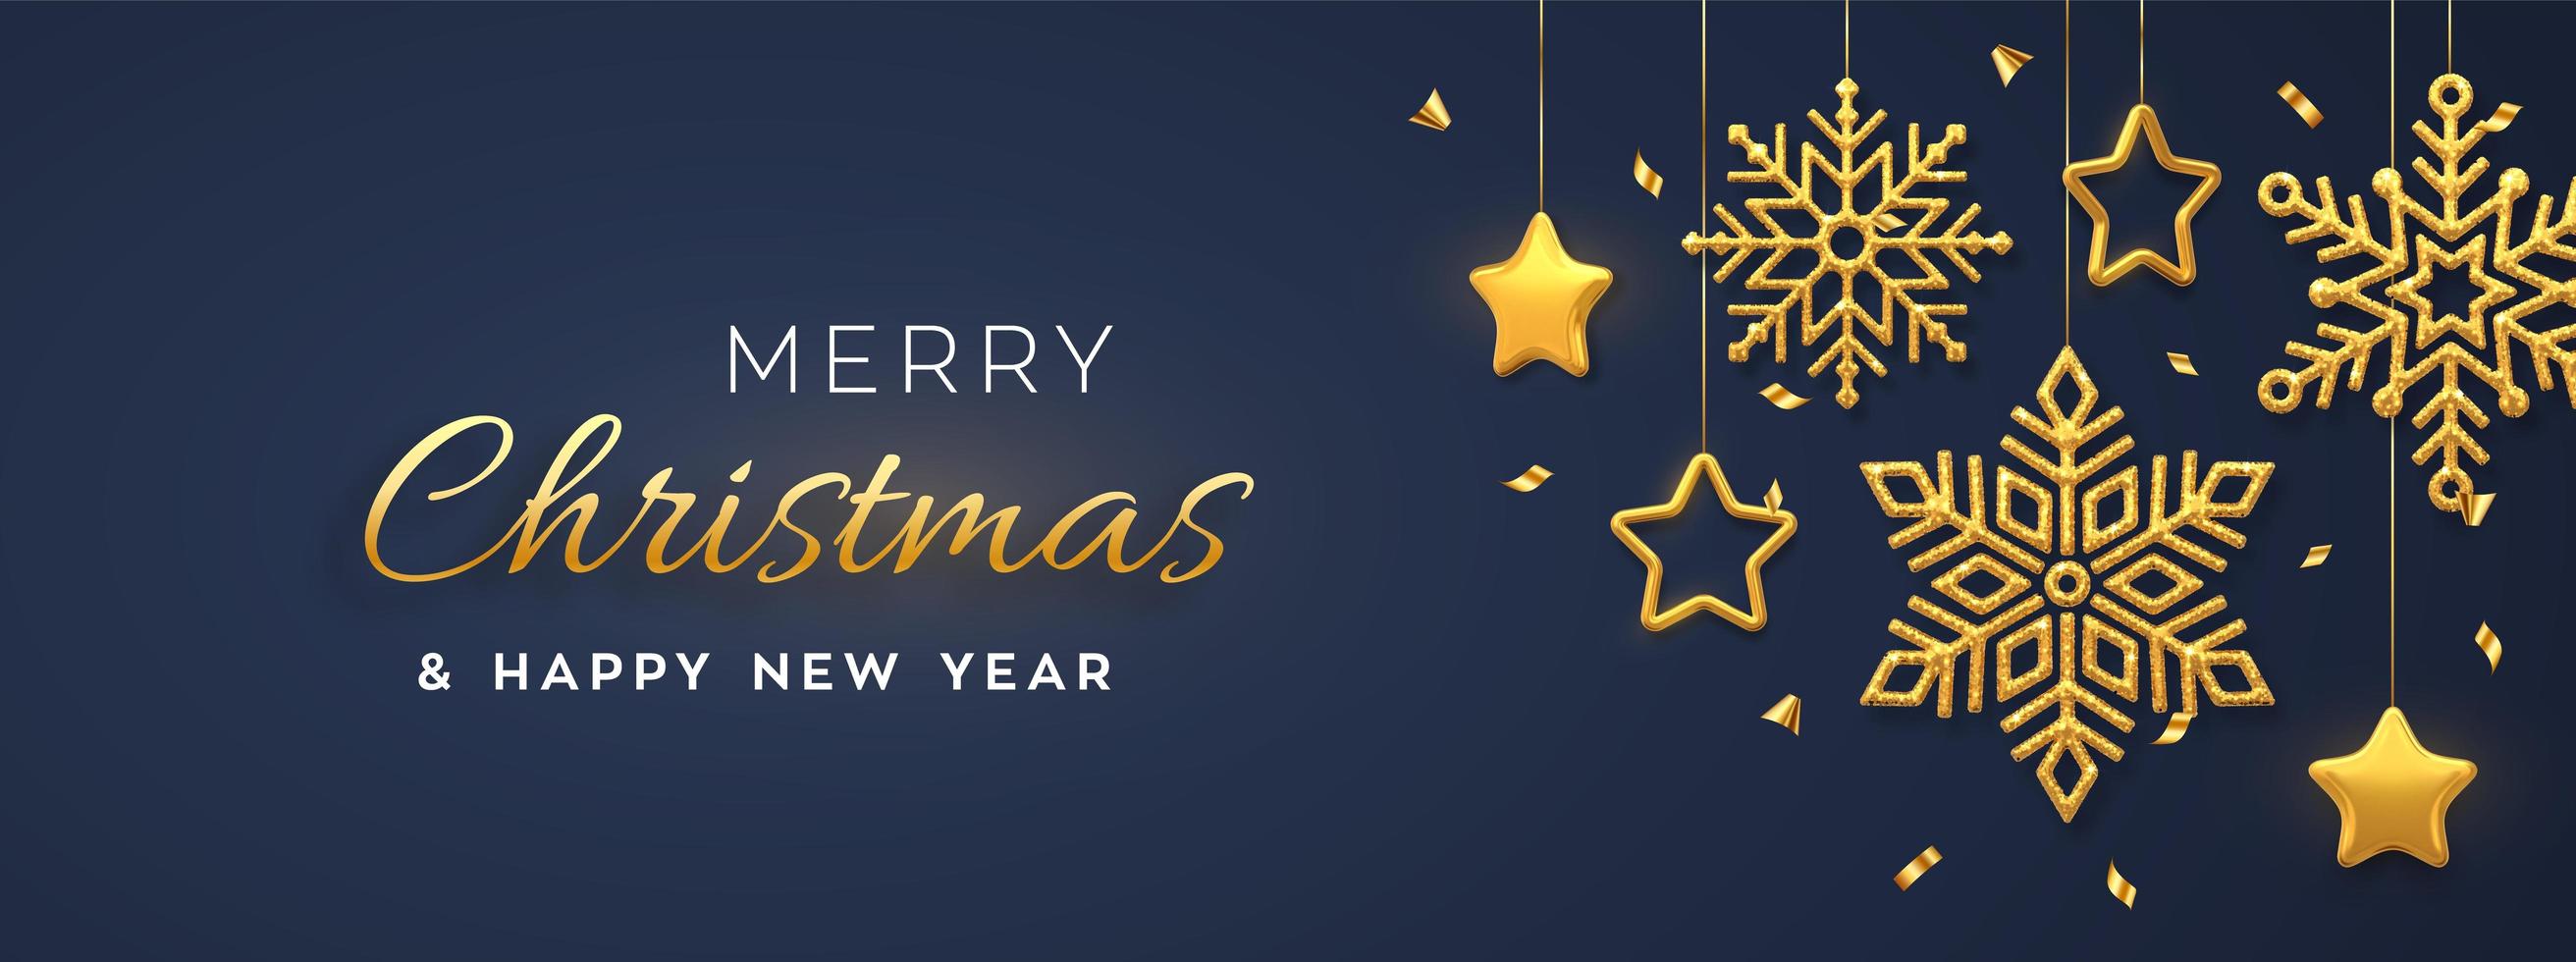 Weihnachtsblauer Hintergrund mit hängenden glänzenden goldenen Schneeflocken und metallischen 3D-Sternen. Frohe Weihnachten Grußkarte. Weihnachts- und Neujahrsplakat, Web-Banner. vektor